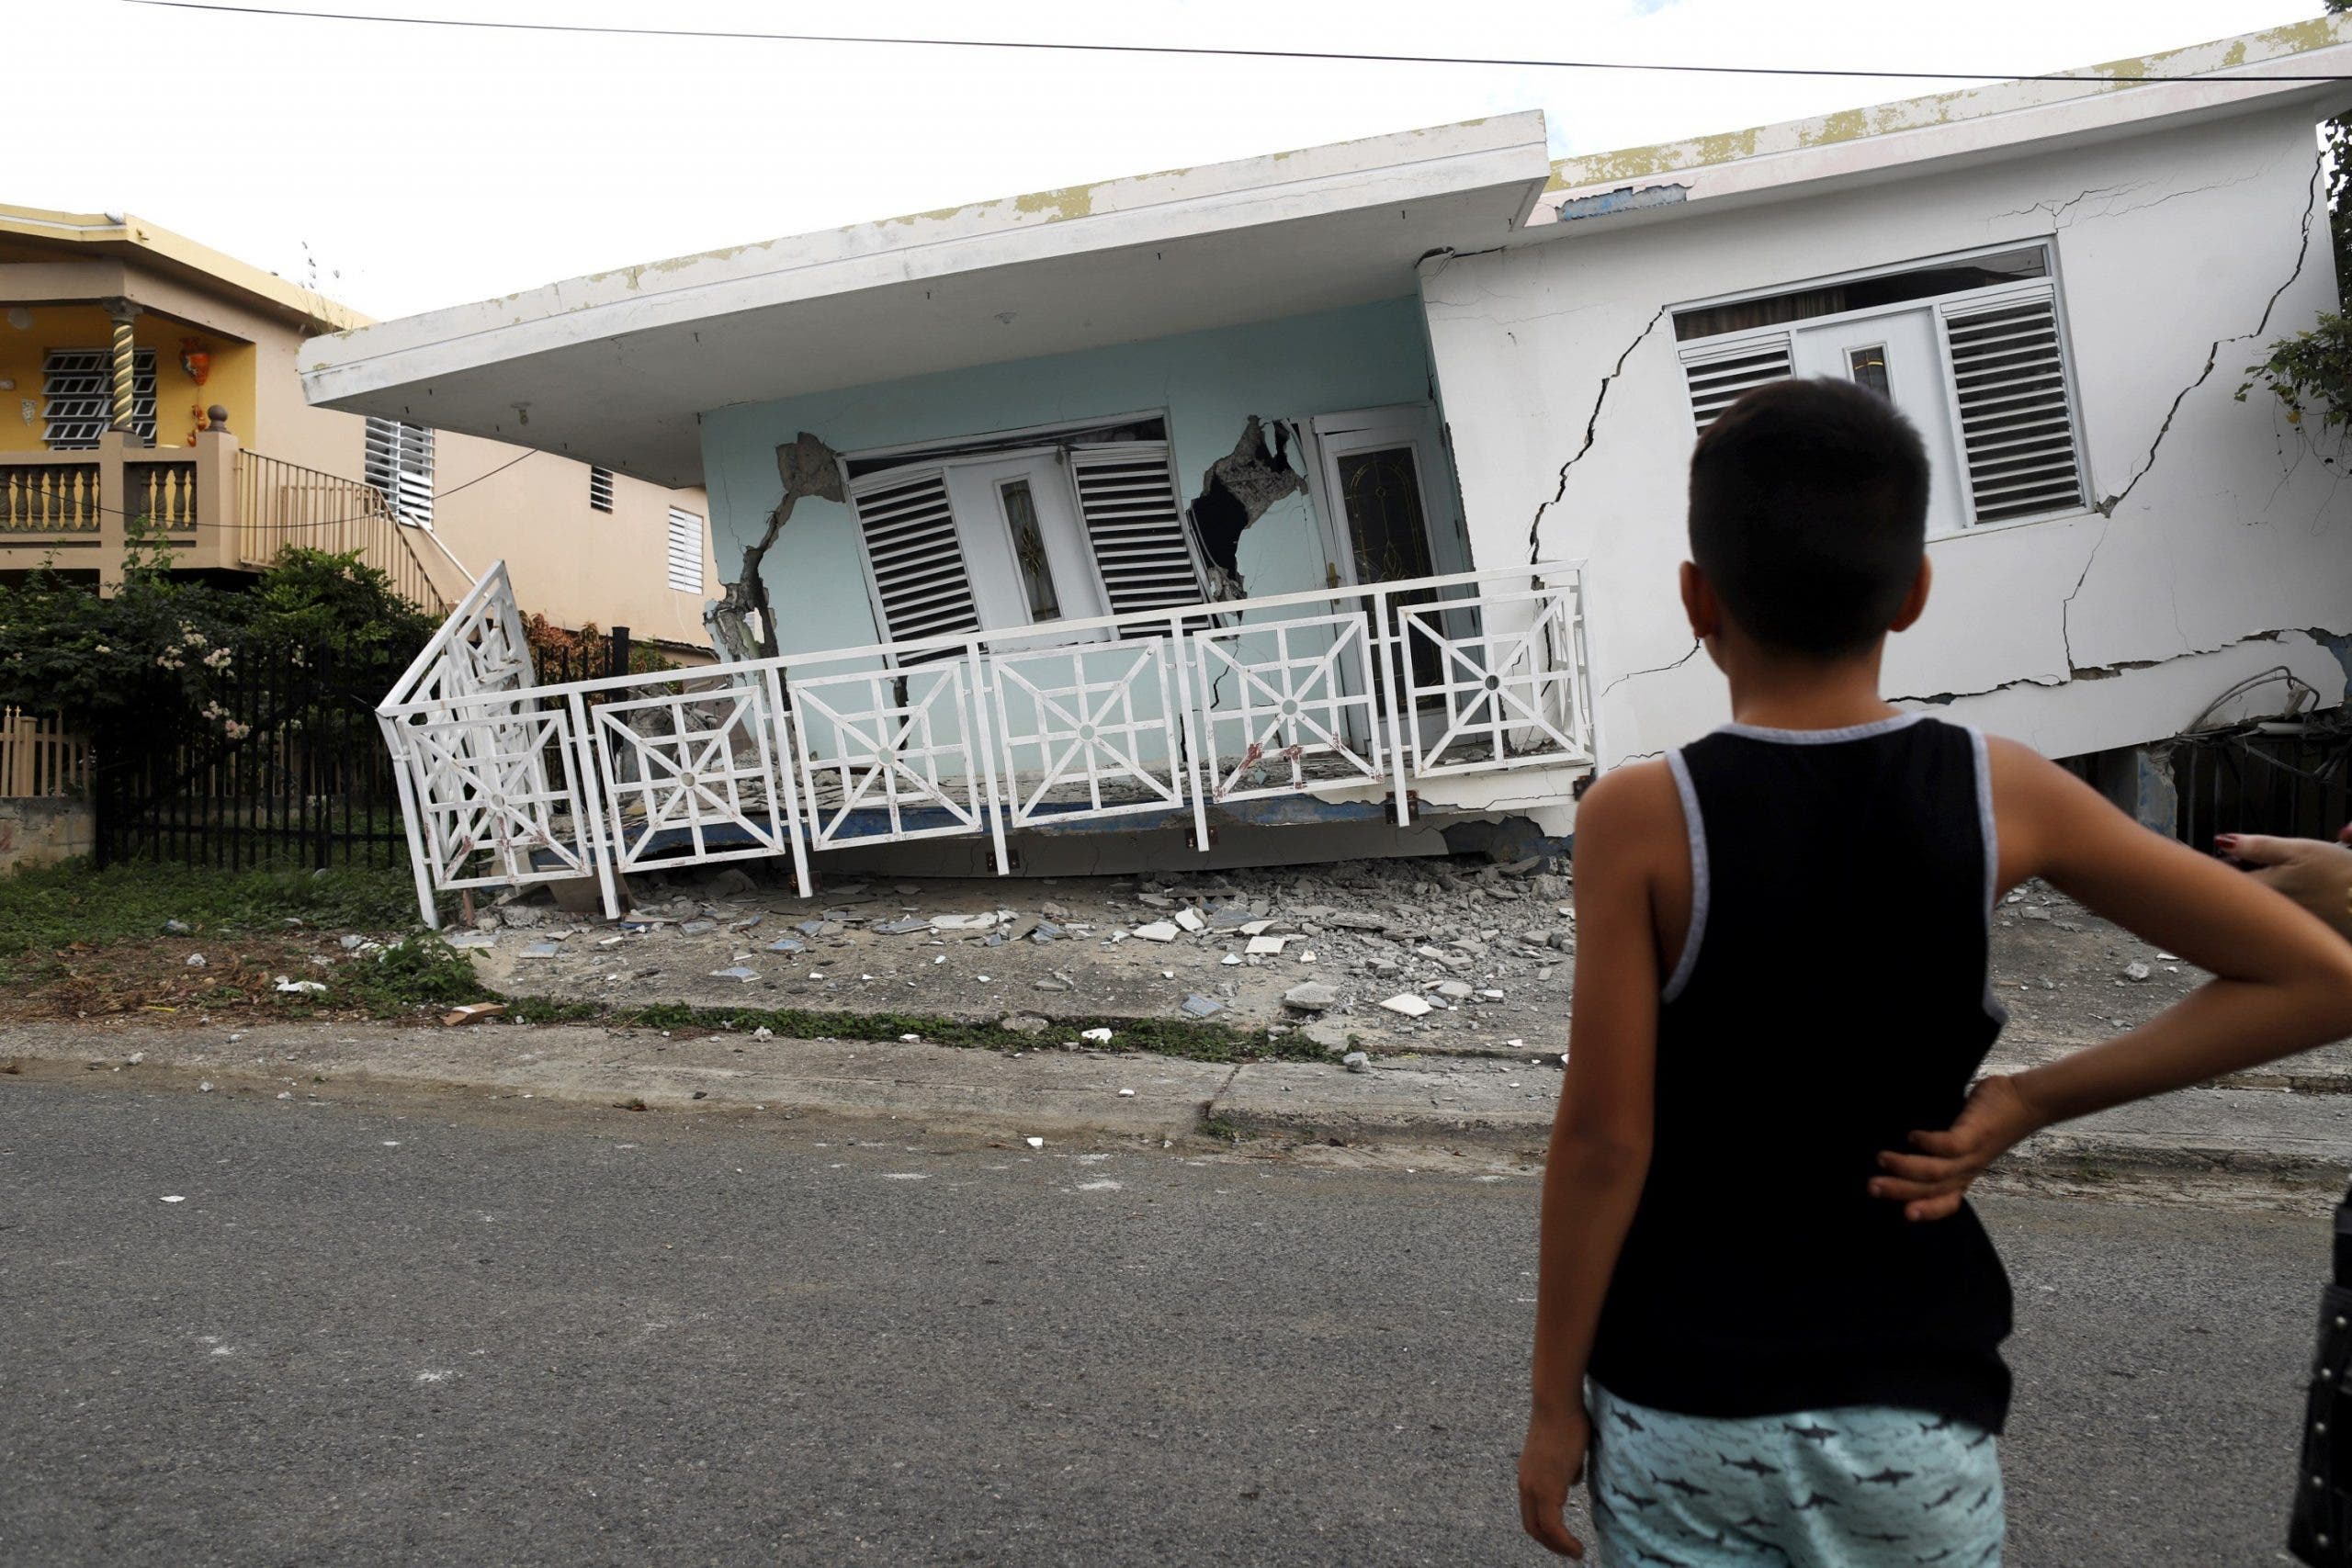 Daños graves en viviendas y edificios con muros y techos caídos en Puerto Rico